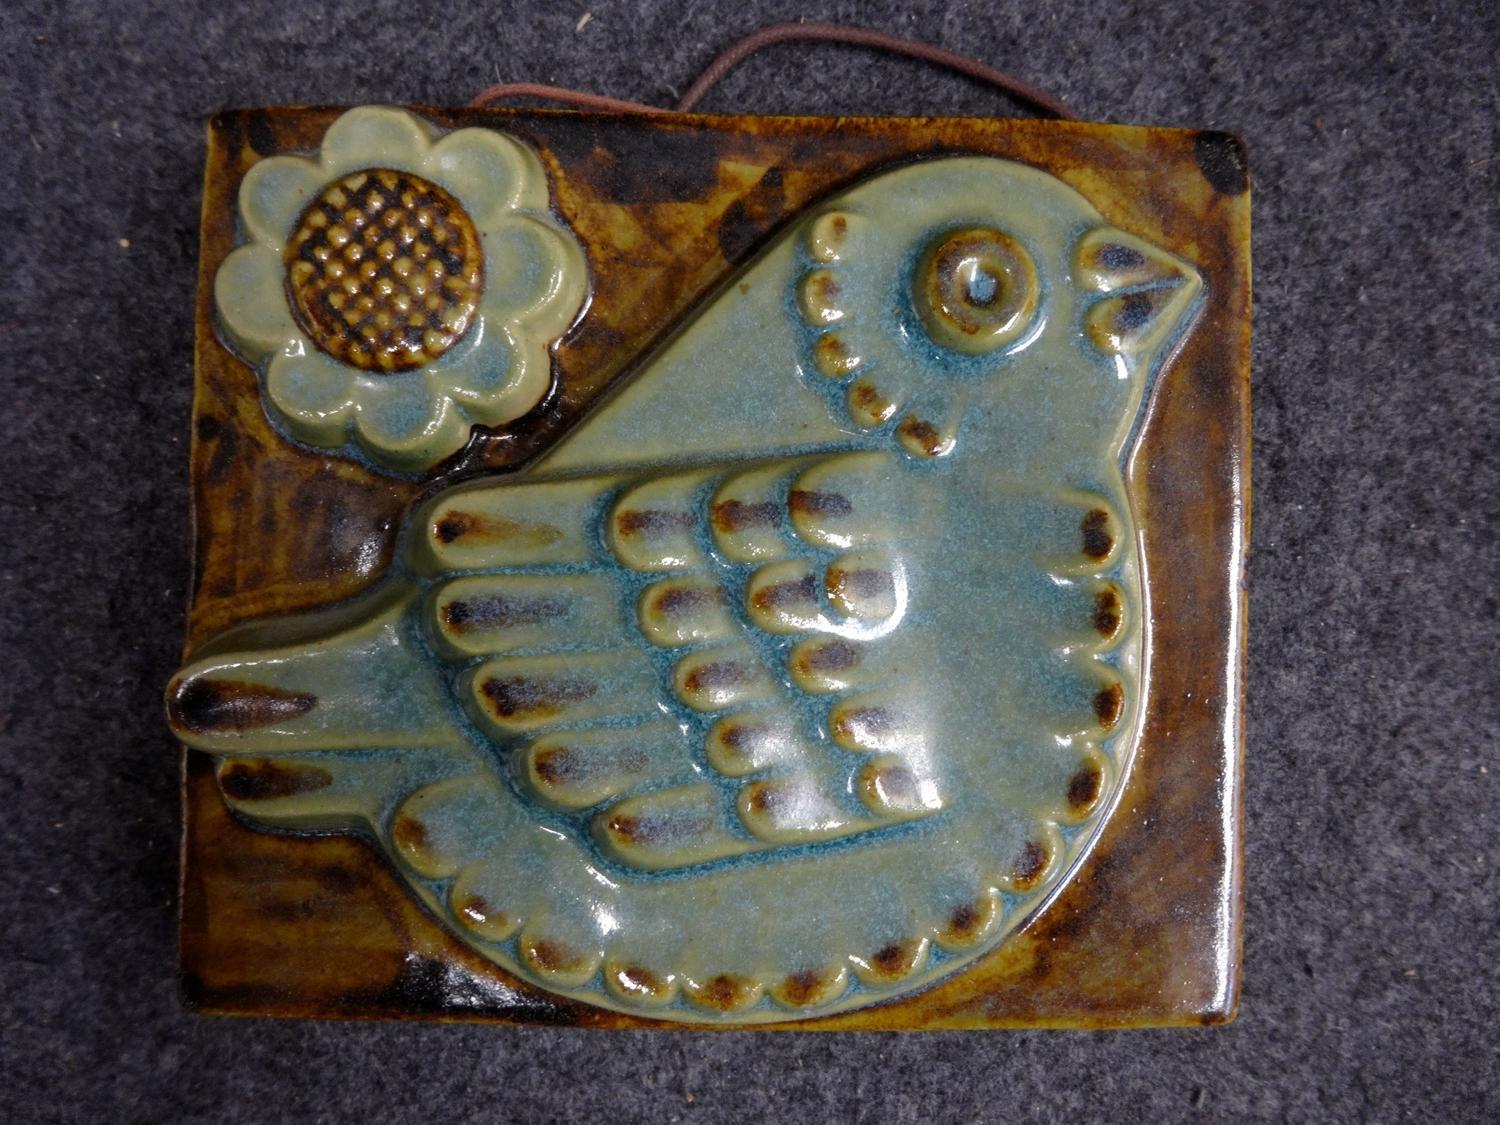 Assiette en céramique gaufrée à l'oiseau bleu des années 1960 provenant des ateliers Ego Stengods en Suède.

Très bon état, à noter un défaut de cuisson sous la céramique, voir photo.